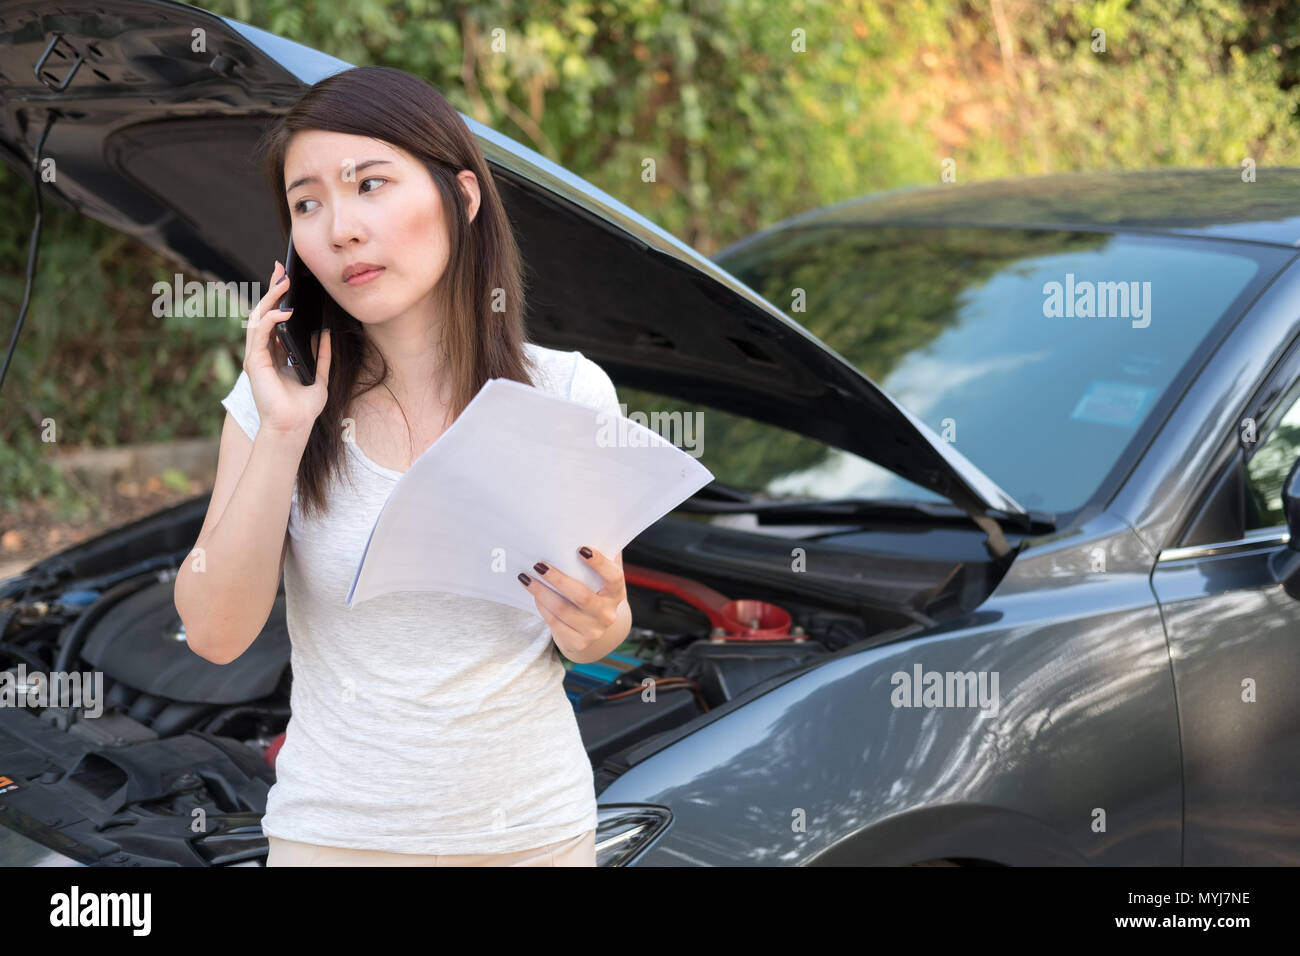 Asia giovane donna in piedi di fronte alla rottura di un auto, chiede aiuto,hanno bisogno di servizio di emergenza Foto Stock